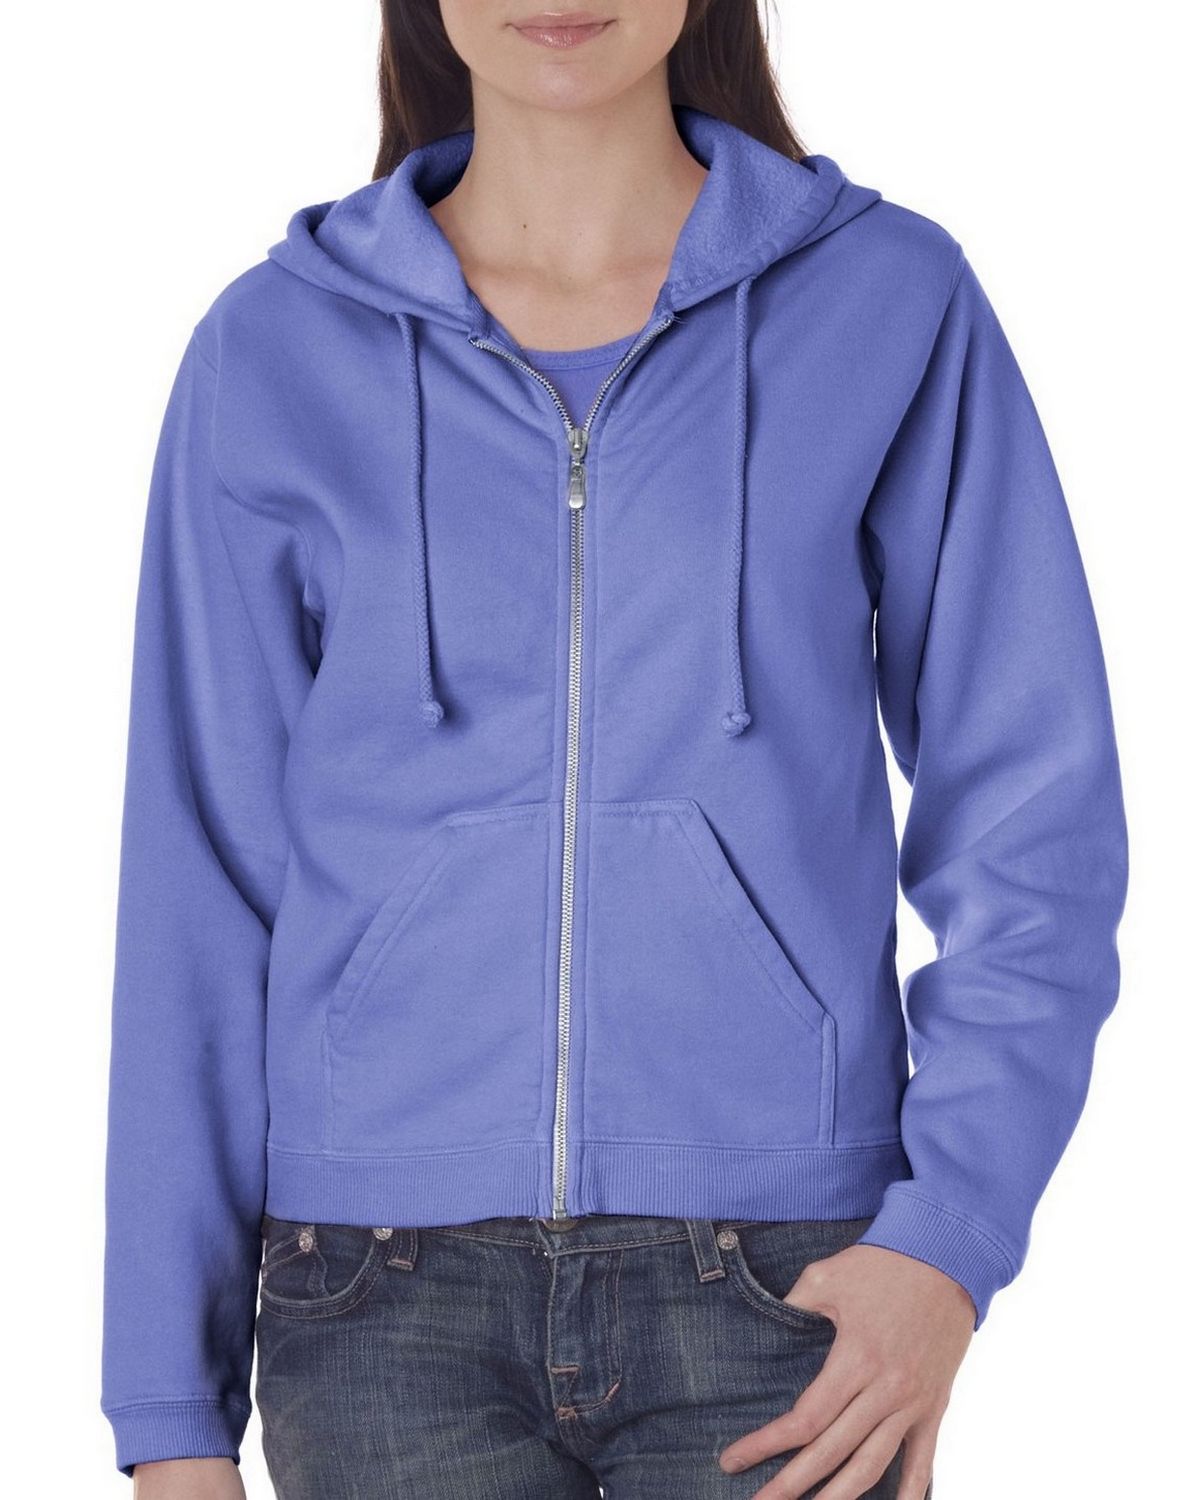 Chouinard 1598 Ladies Full Zip Hooded Sweatshirt - ApparelnBags.com